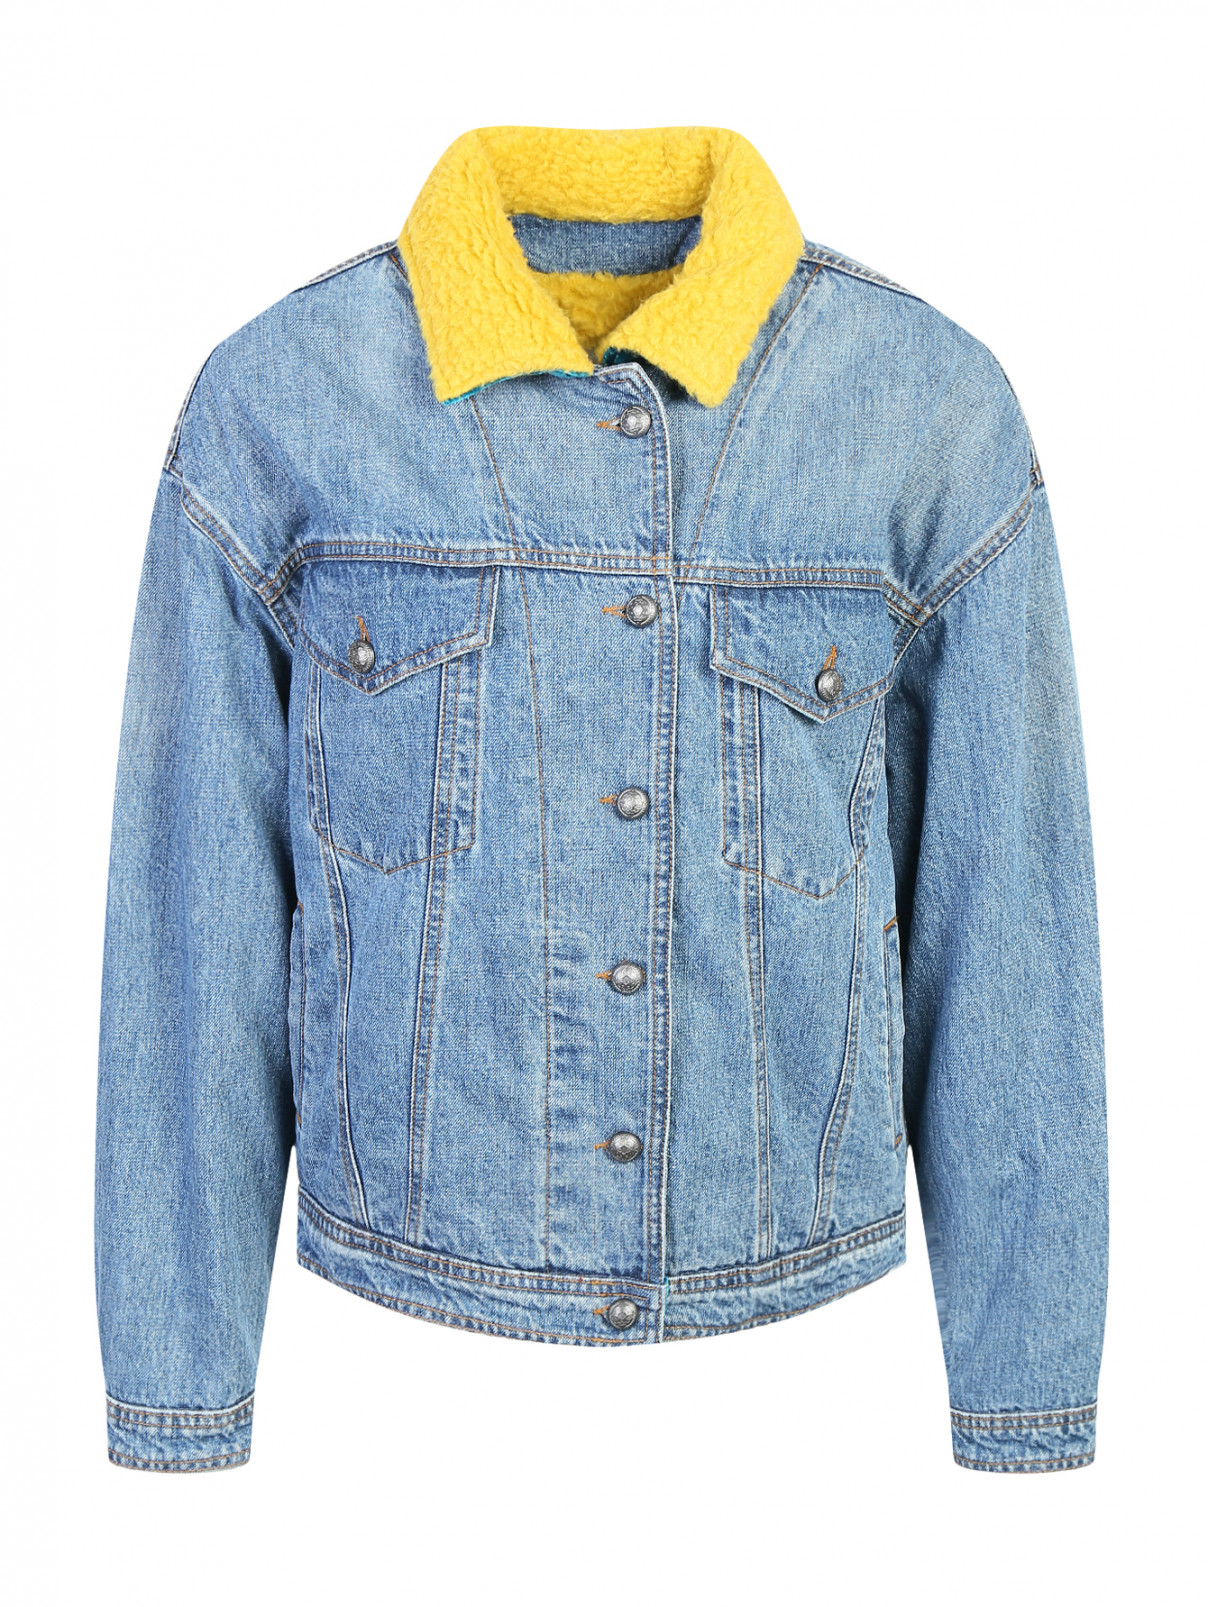 Джинсовая куртка с аппликацией на спине Etro  –  Общий вид  – Цвет:  Синий